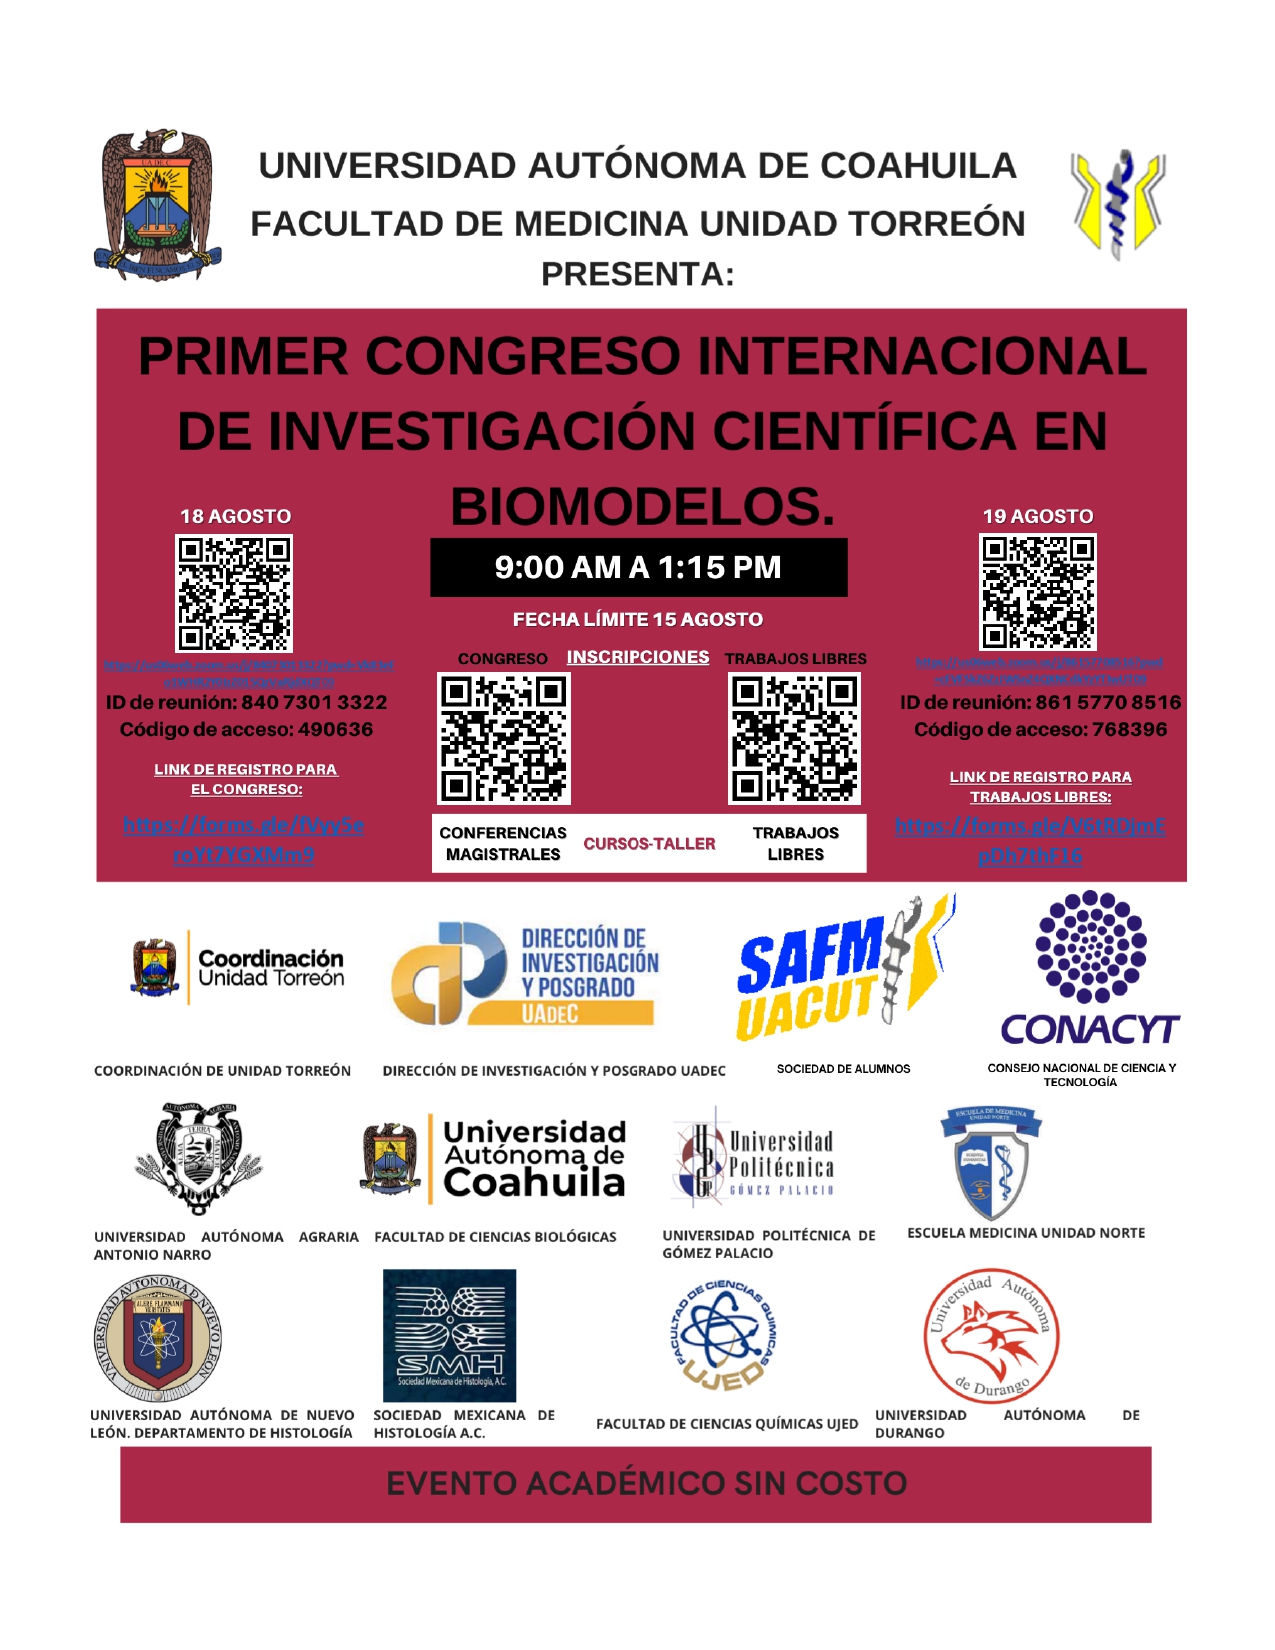 Invita Facultad de Medicina UT al Primer Congreso Internacional de Investigación Científica en Biomodelos